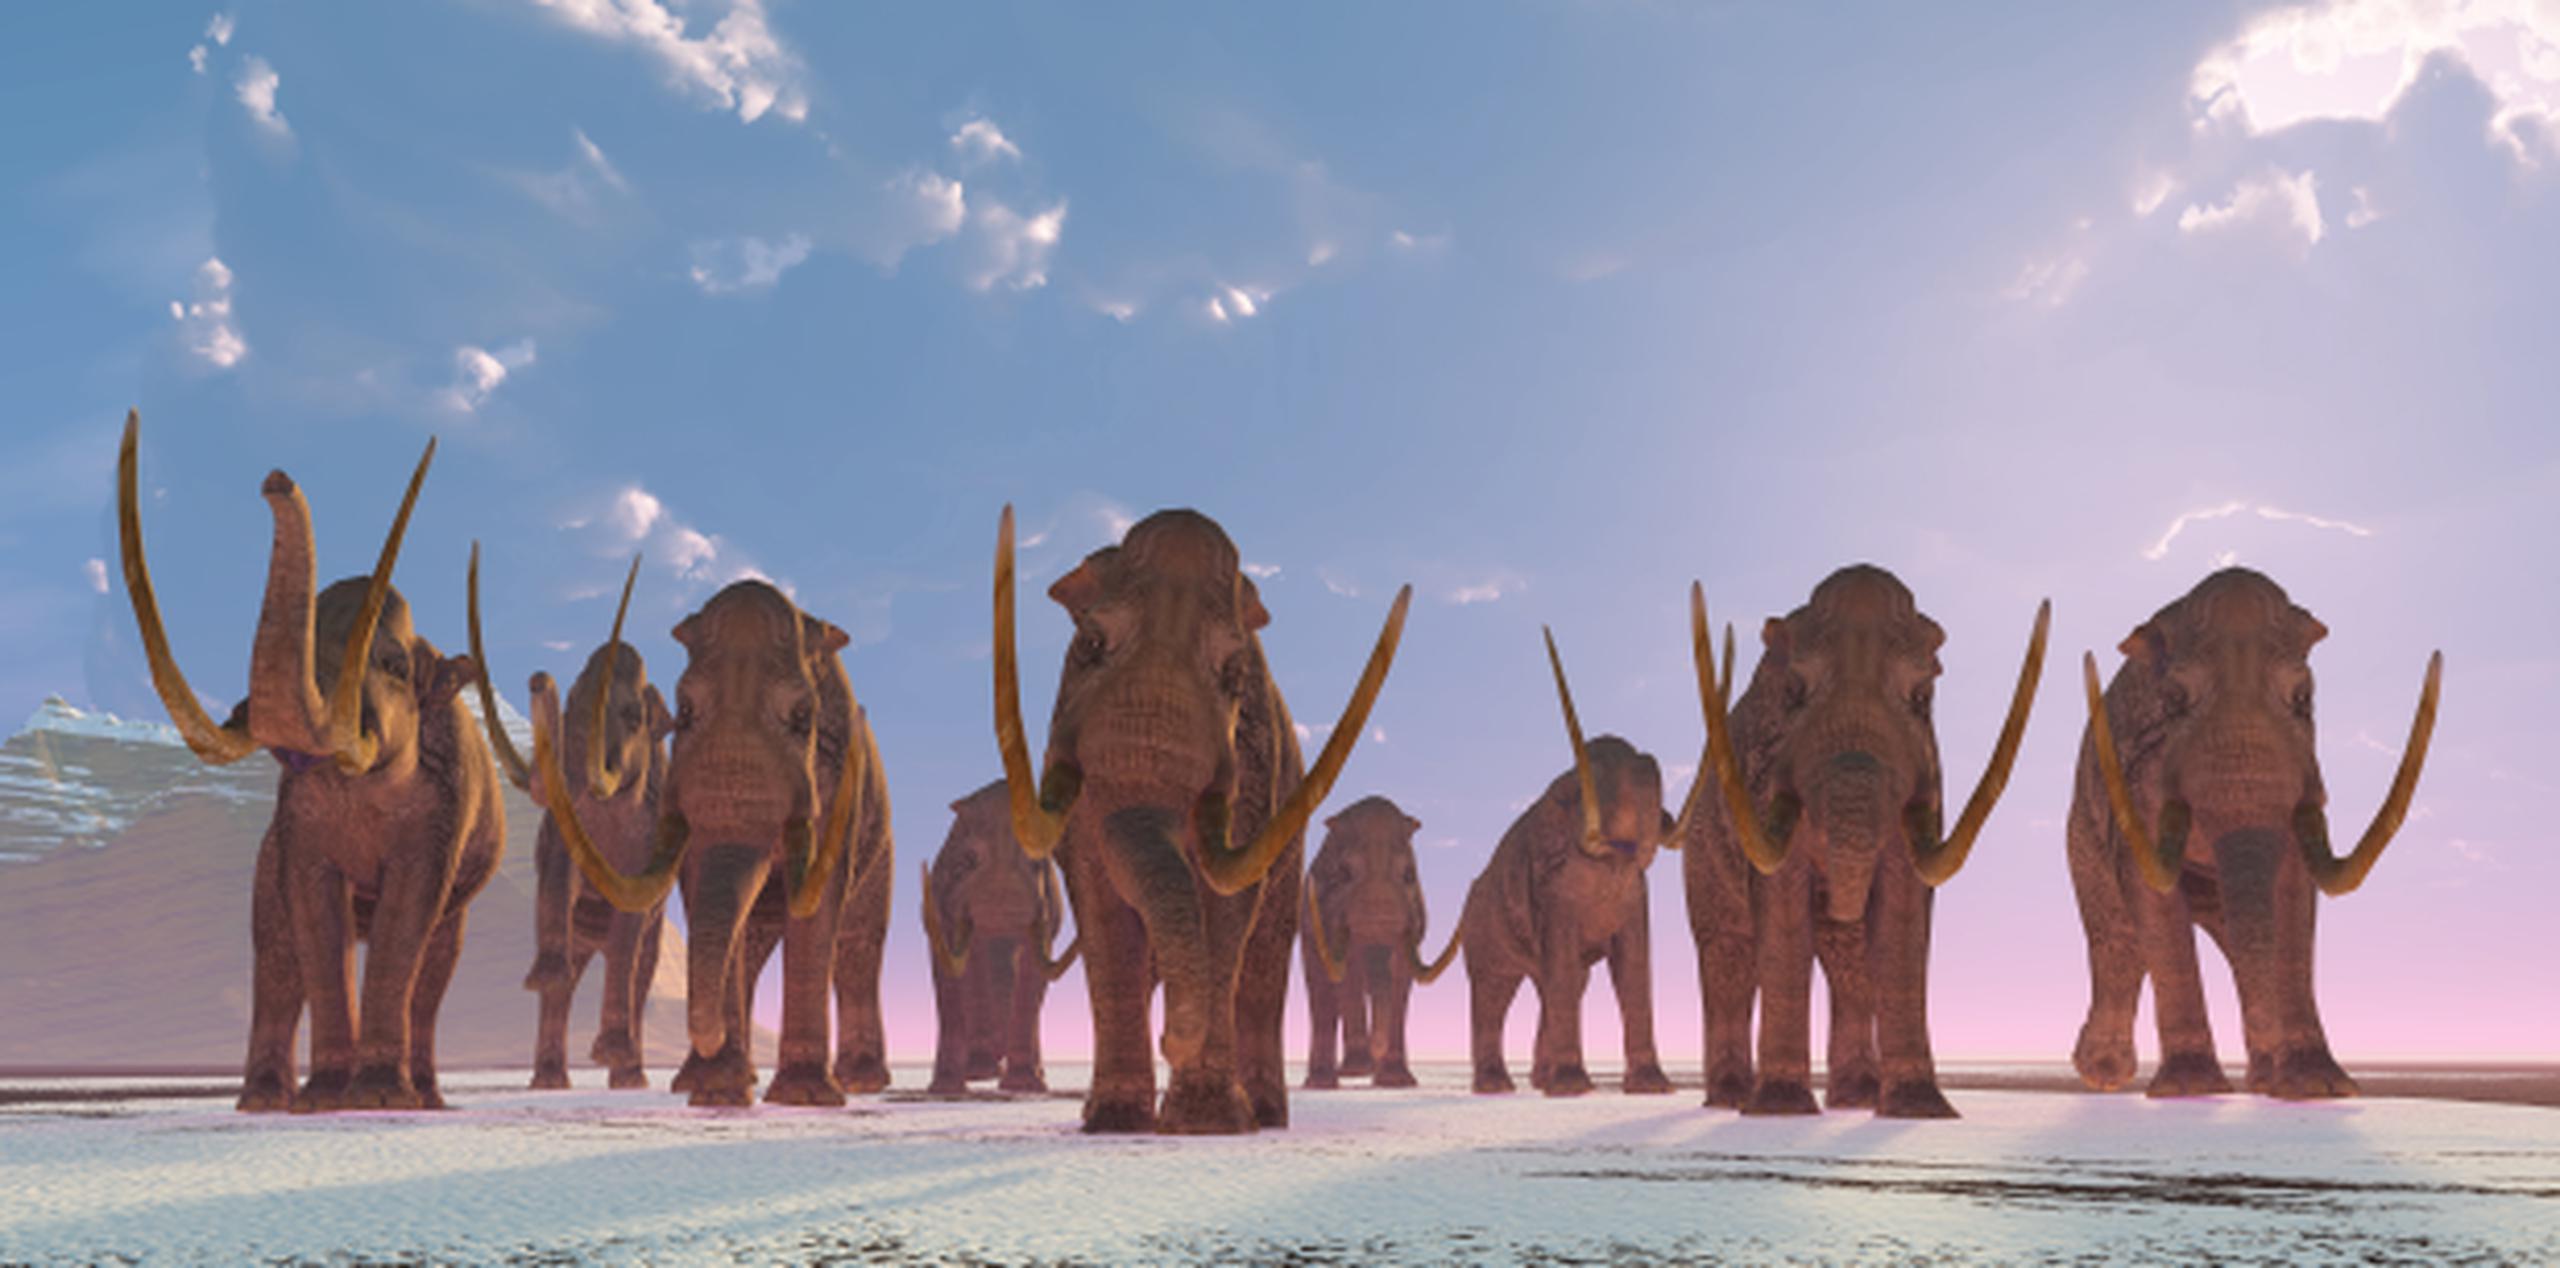 Las huellas corresponden a mamuts colombinos, especie que vivió en Norteamérica. (Shutterstock)